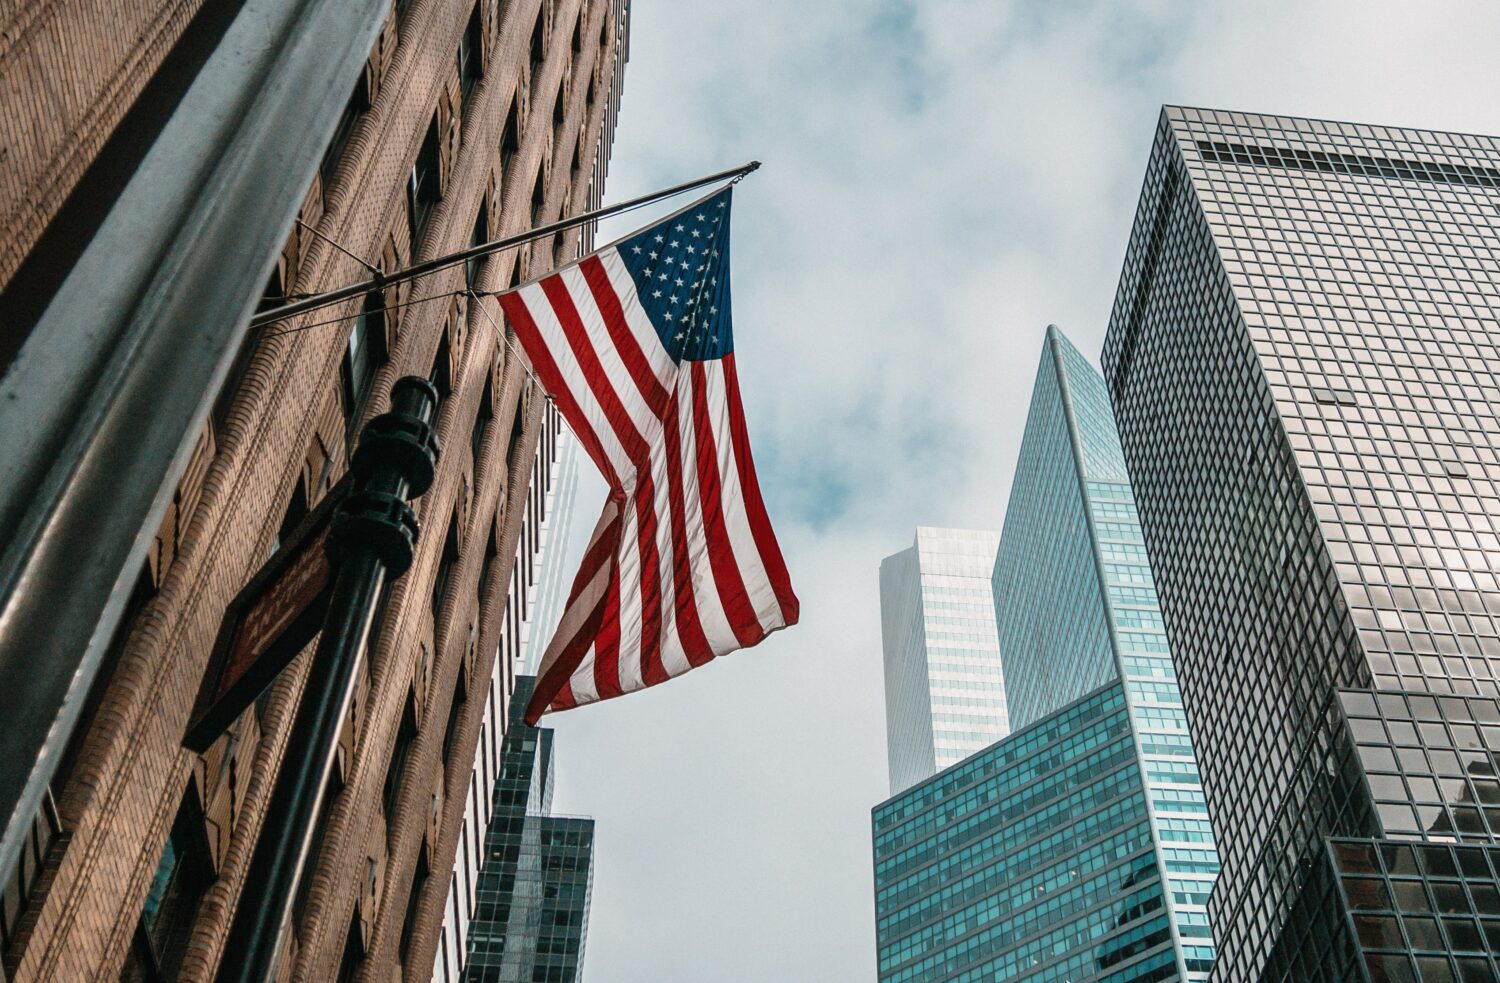 Bandeira dos EUA em prédio de Nova York, ilustrando a capa do post de seguro viagem Estados Unidos - Foto: Nik Shuliahin via Unsplash